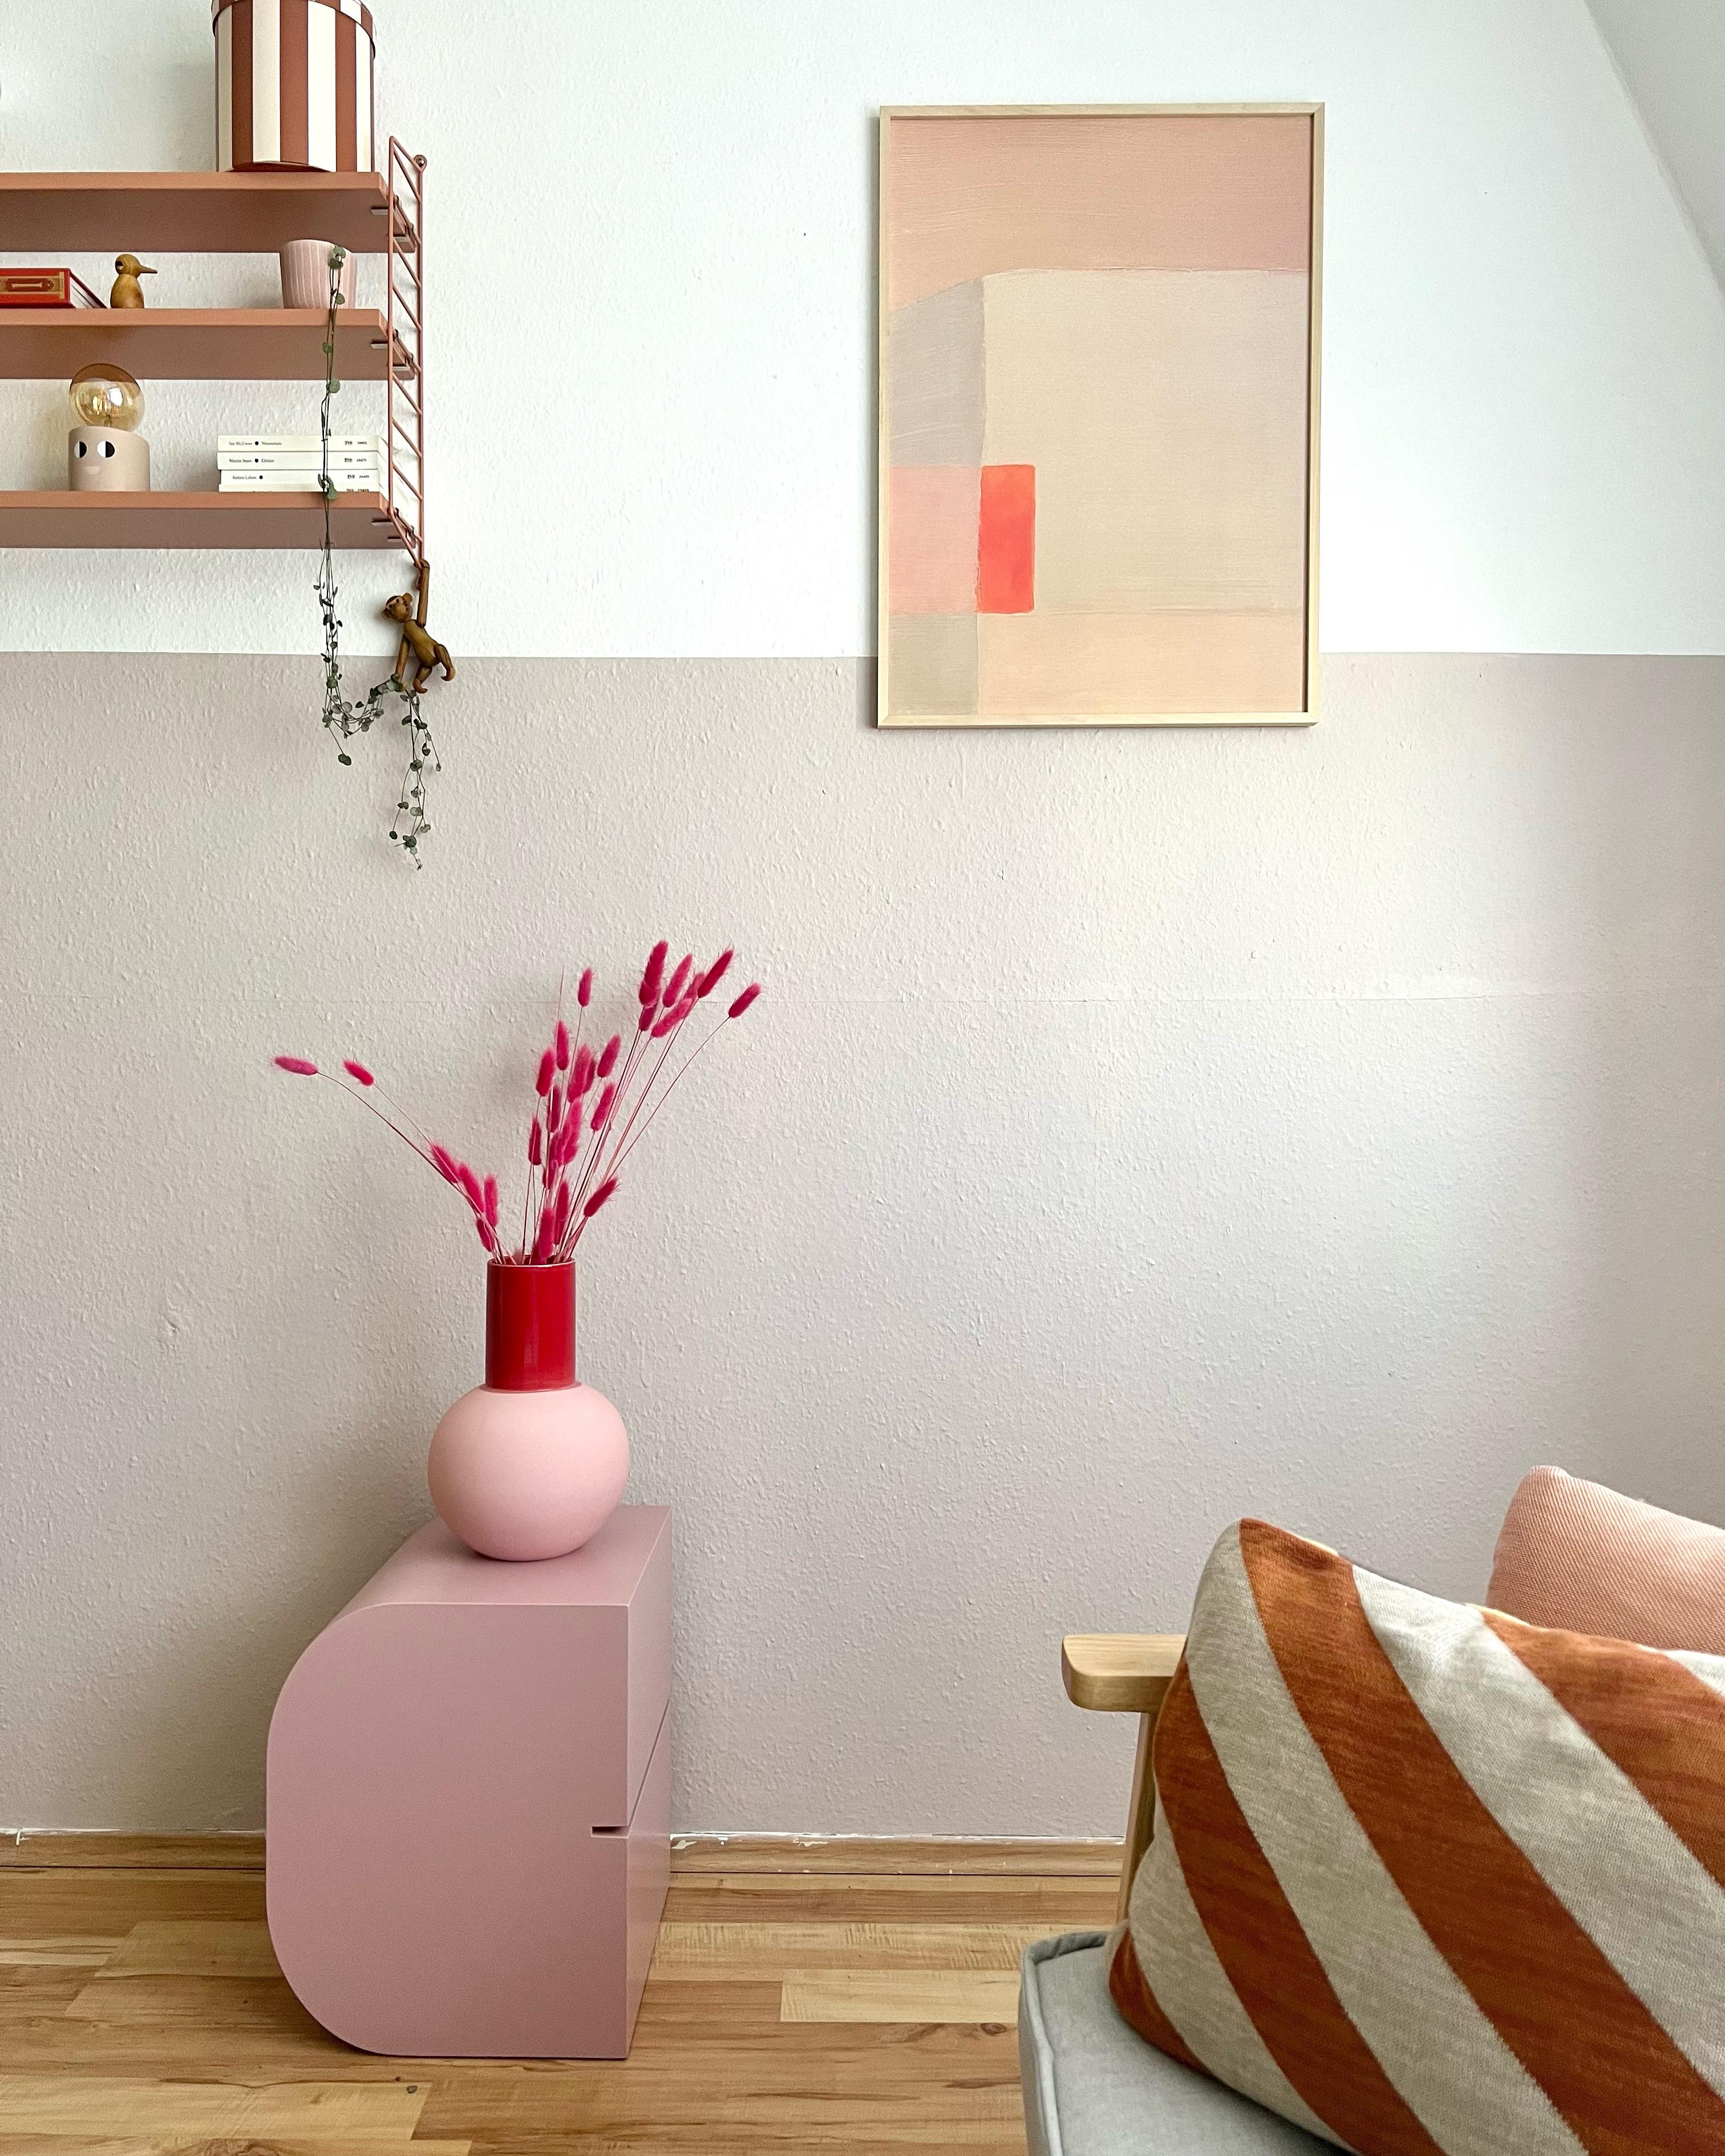 #couchliebt #interior #interiordesign #interiorinspo #kunst #contemporary #art #buchstabenhocker #stringregal #pink